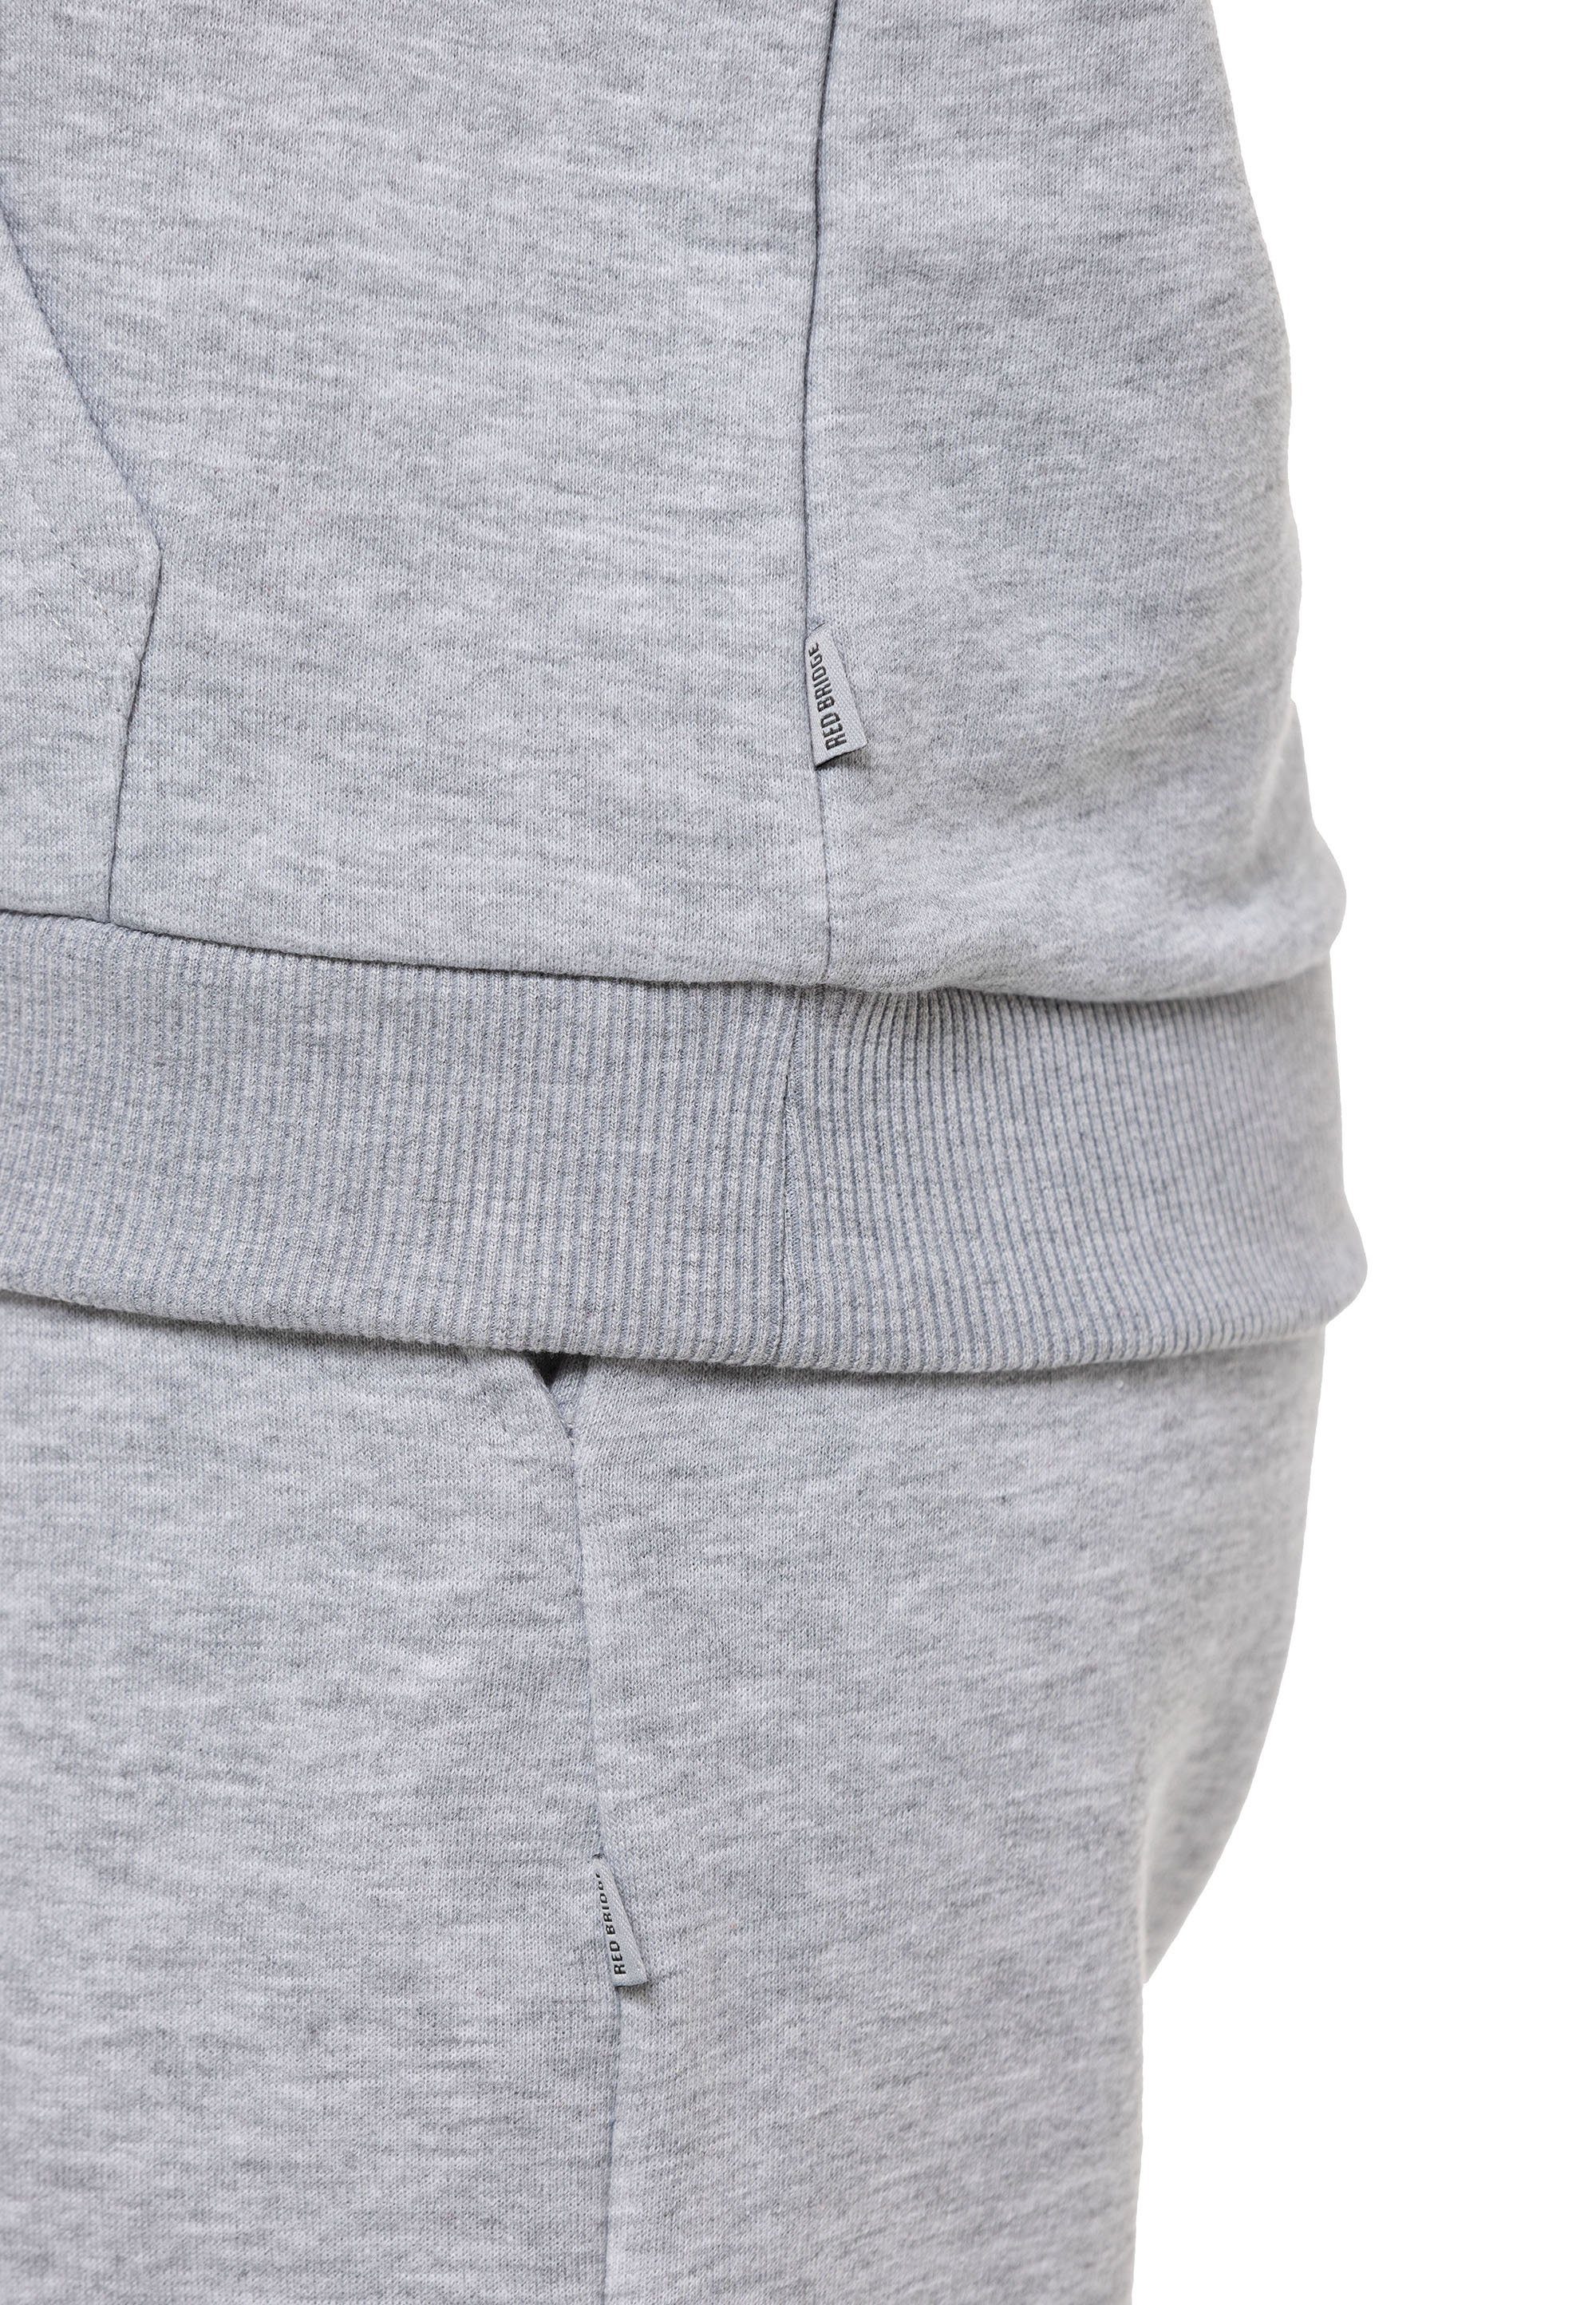 Grau-Melange Qualität Sweatshirt Premium Rundhals Pullover RedBridge